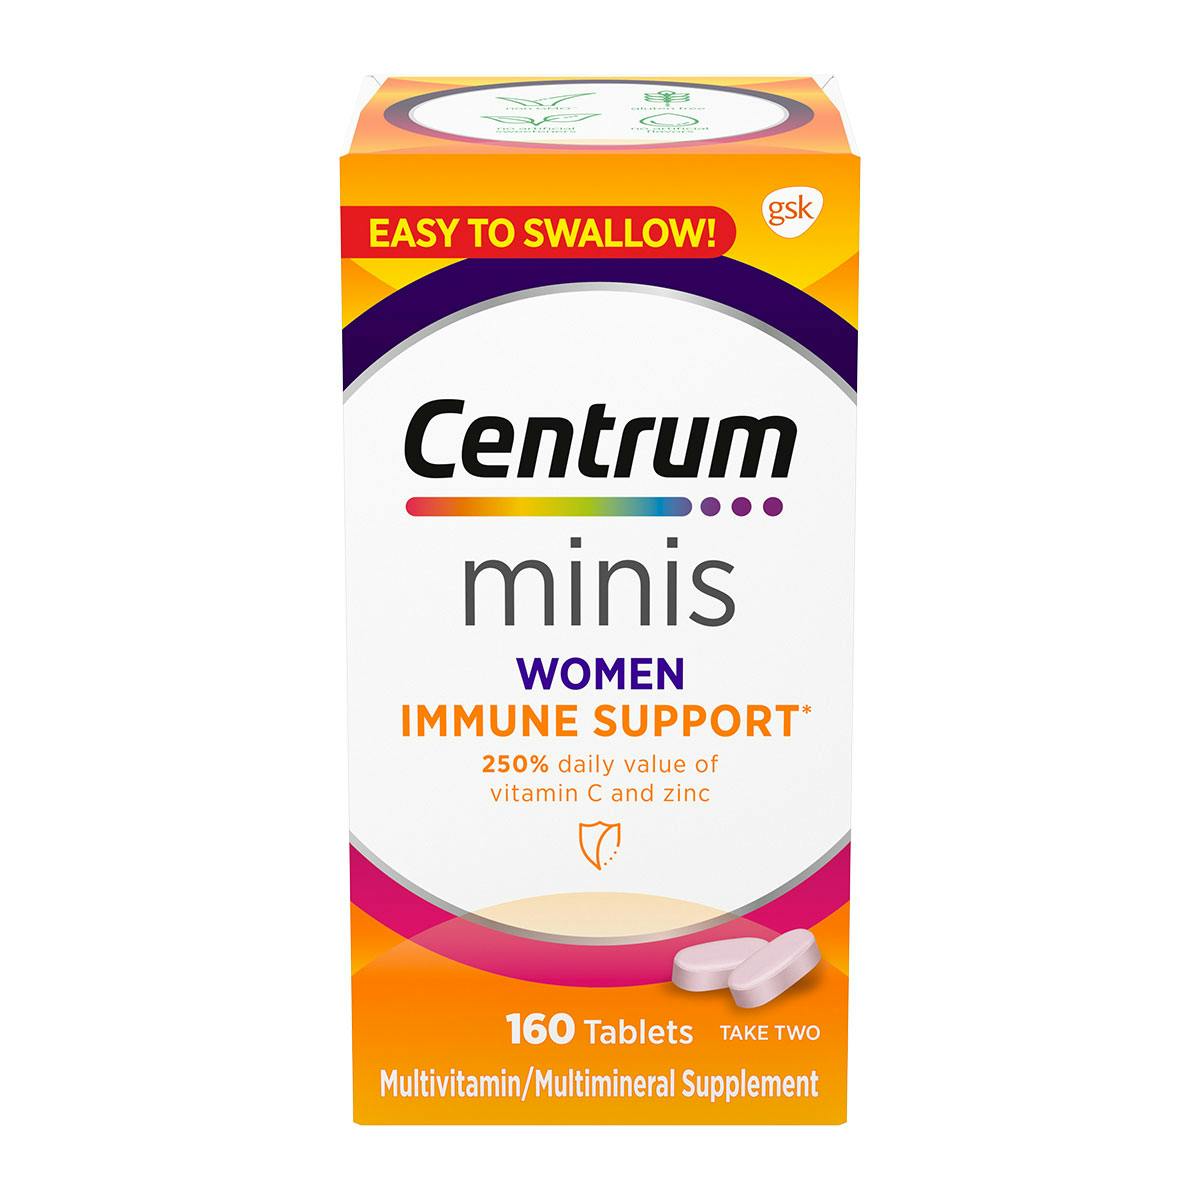 Box of Centrum Minis Women Immune Support multivitamins